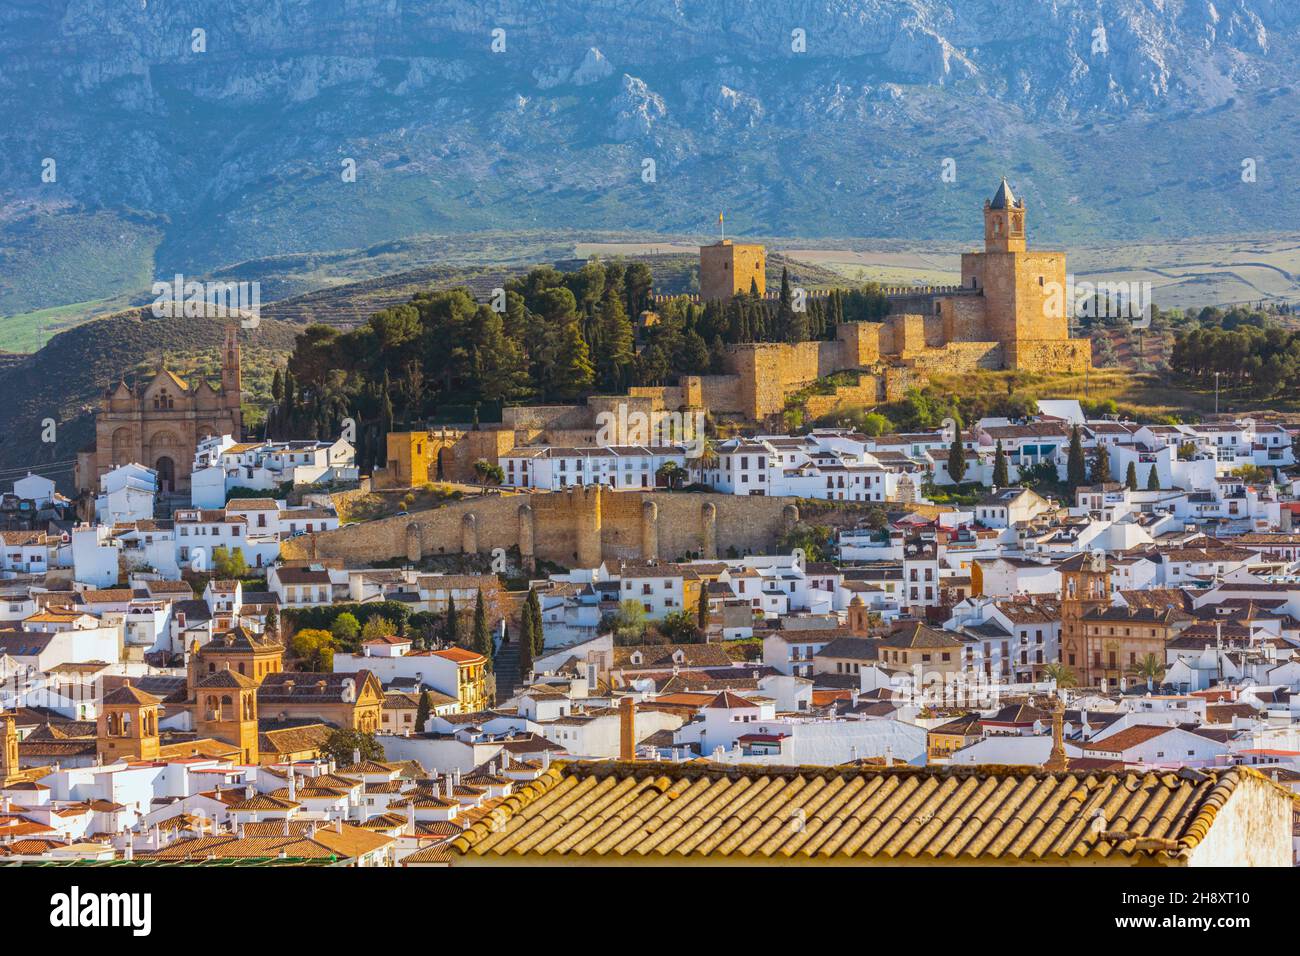 Antequera, Provinz Malaga, Andalusien, Südspanien. Blick über die Stadt vom Hügel Vera Cruz bis zur Alcazaba (Zitadelle oder Burg). Stockfoto